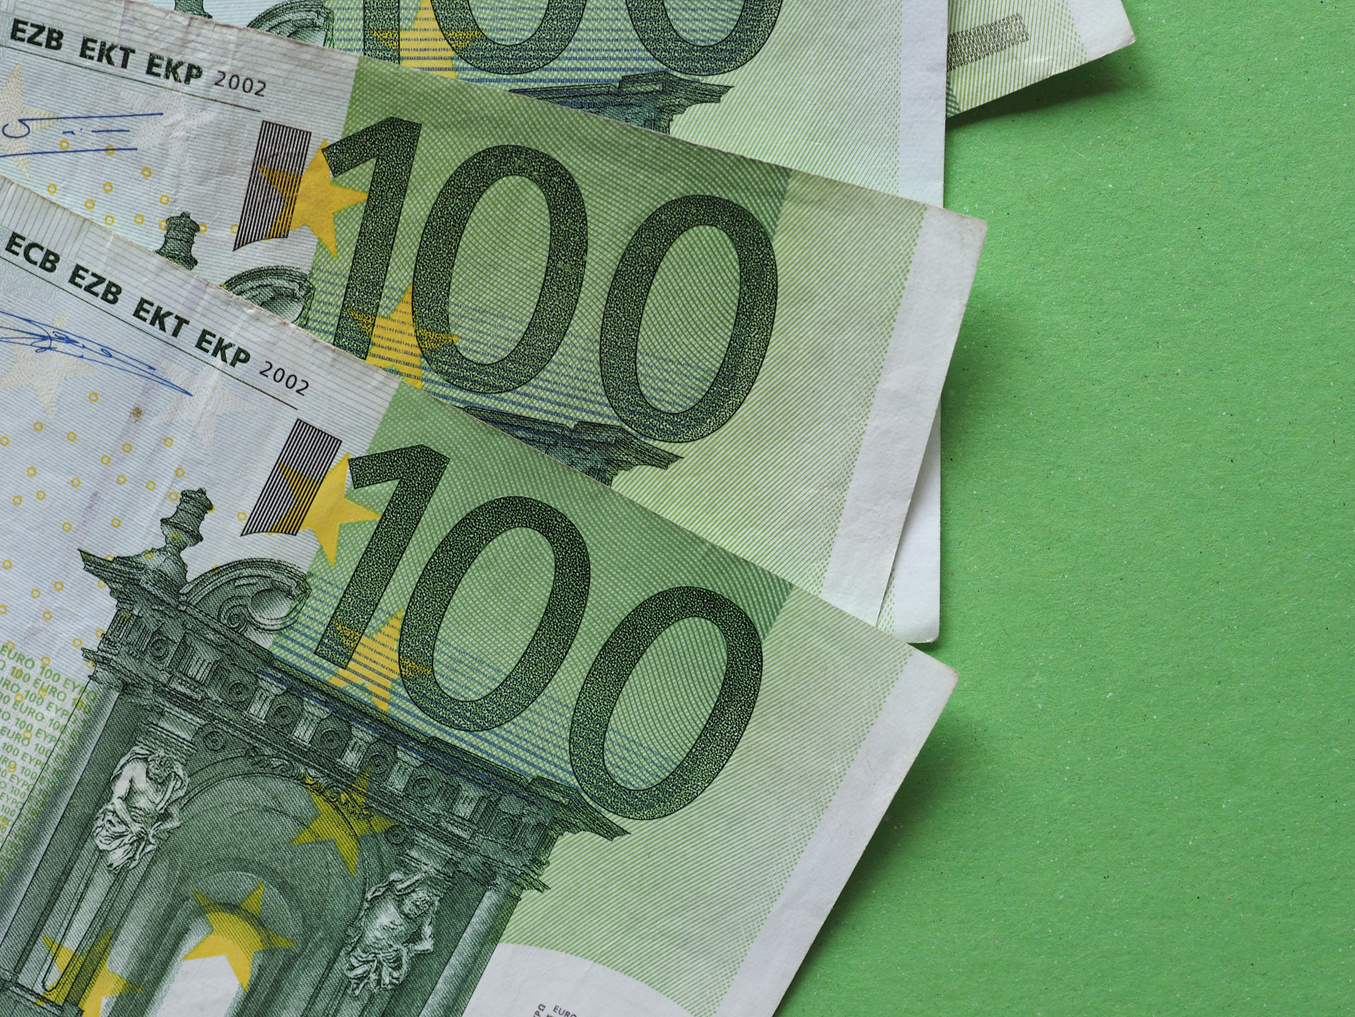 100 Euro Notes, European Union